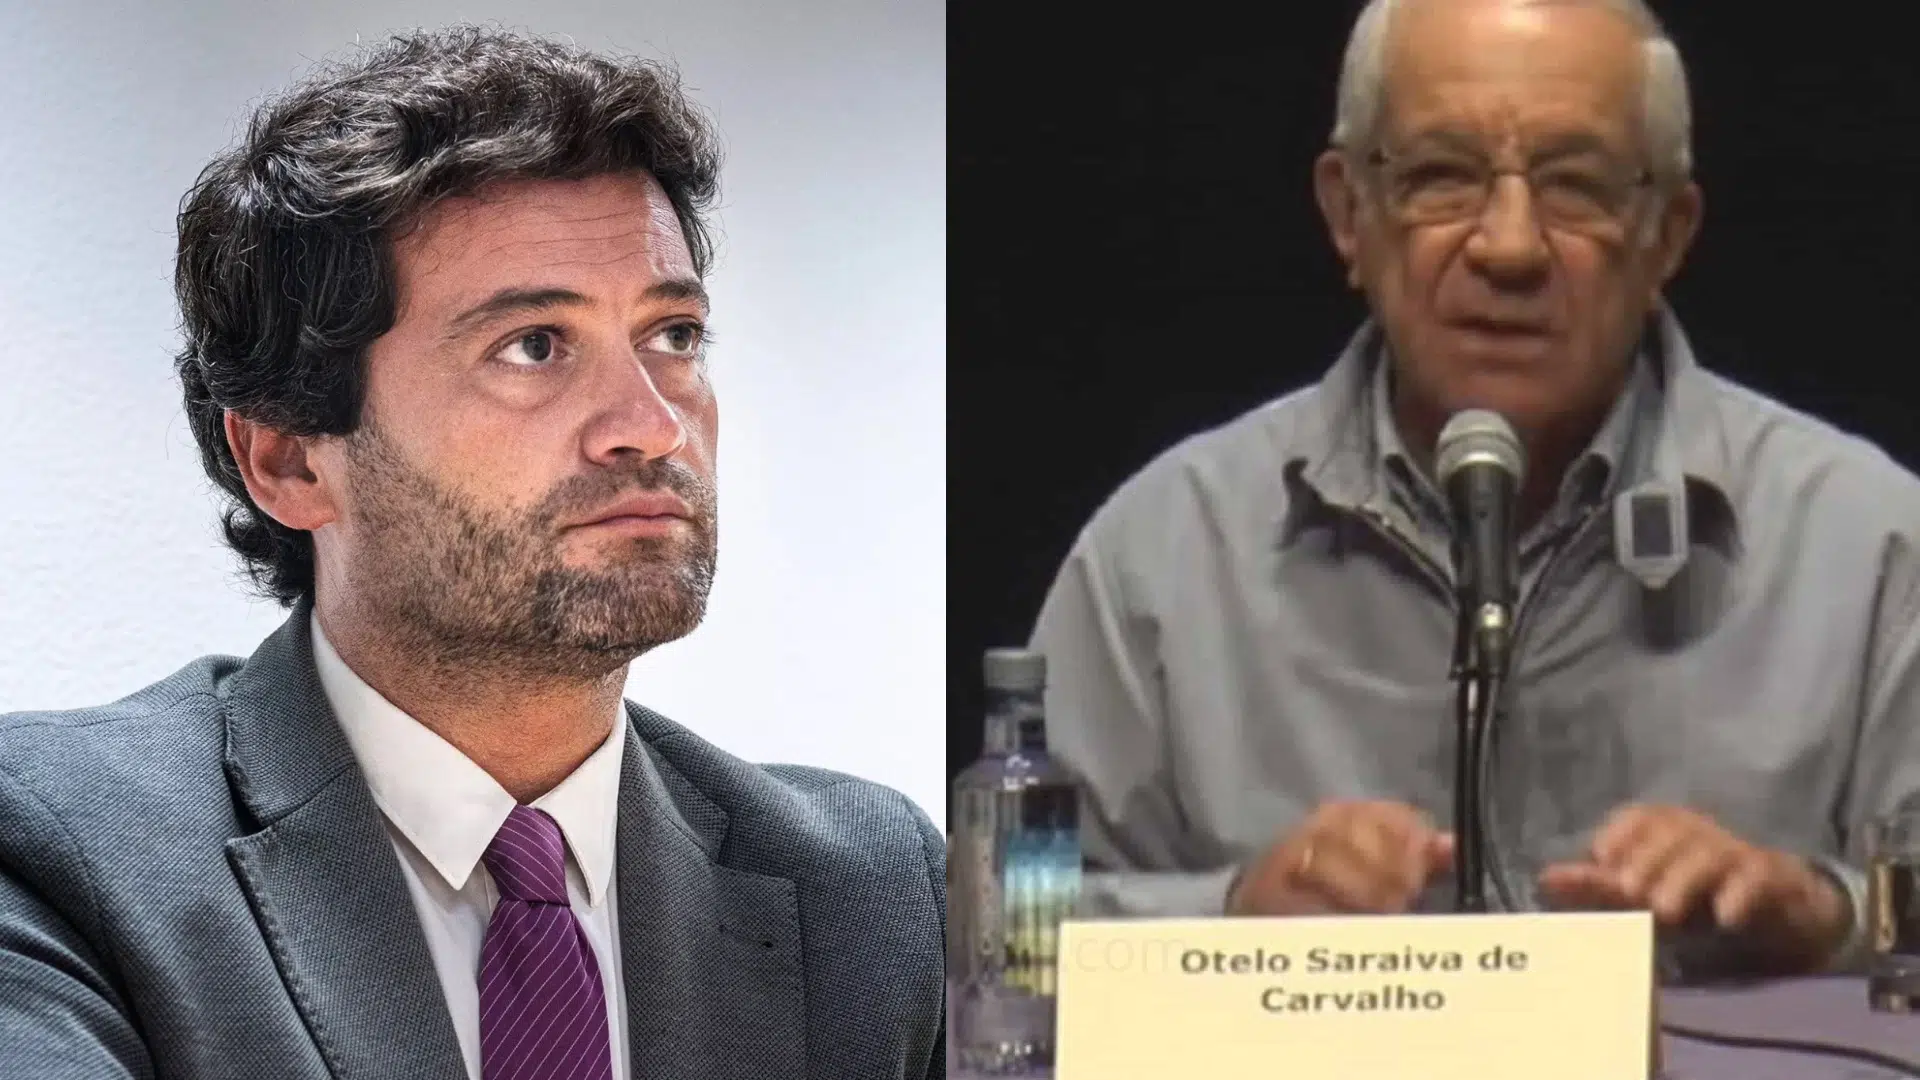 André Ventura, Otelo Saraiva De Carvalho